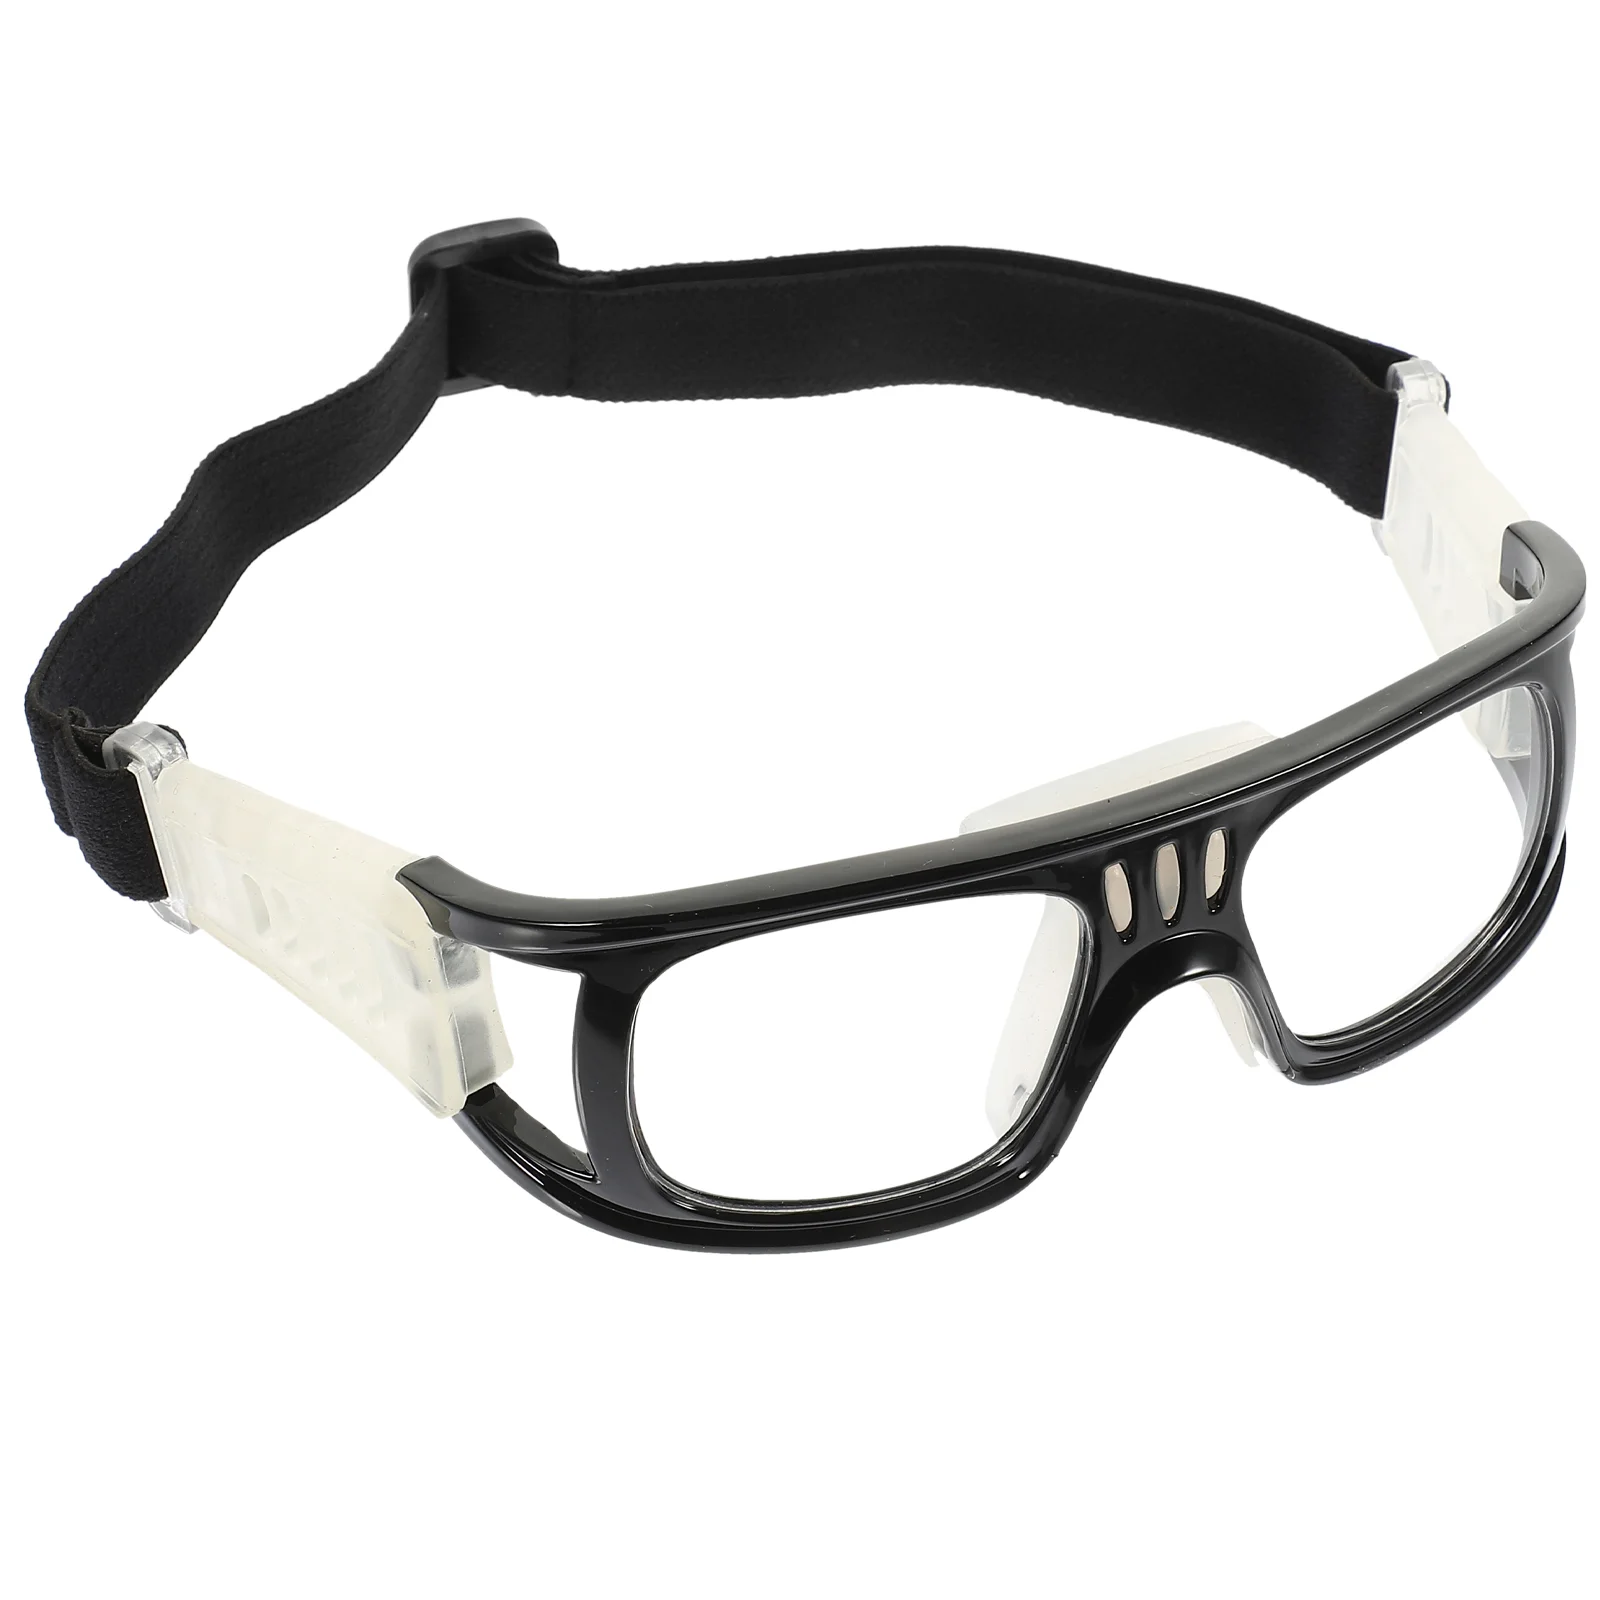 

Спортивные очки для улицы противотуманные баскетбольные тренировочные очки безопасные практичные стильные модные мужские очки для игр